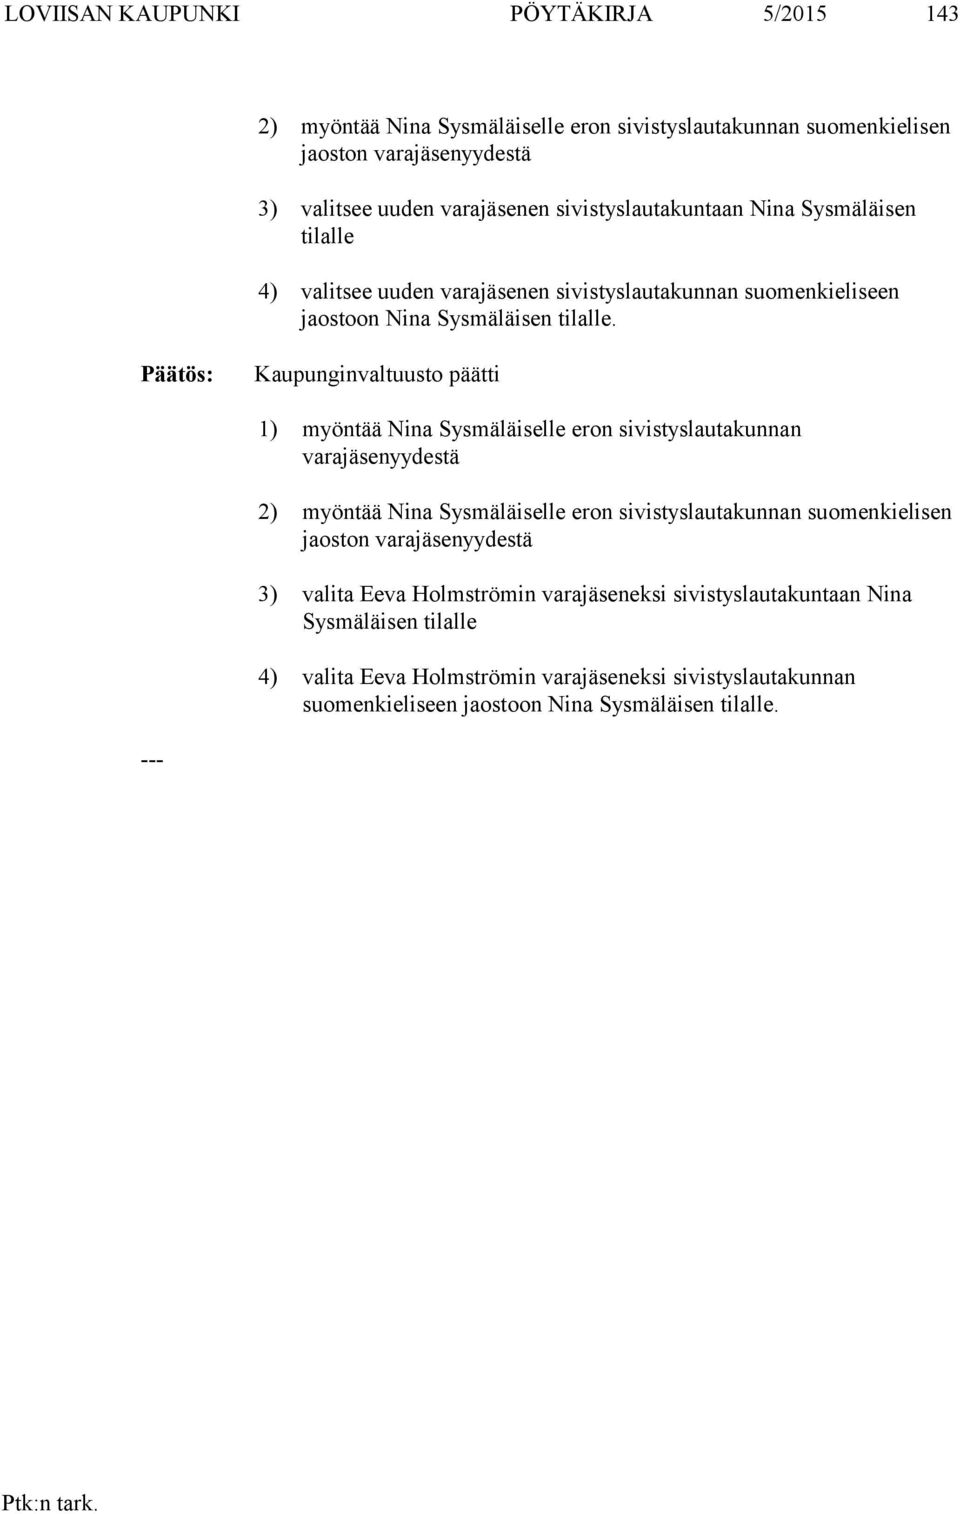 Kaupunginvaltuusto päätti 1) myöntää Nina Sysmäläiselle eron sivistyslautakunnan varayydestä 2) myöntää Nina Sysmäläiselle eron sivistyslautakunnan suomenkielisen